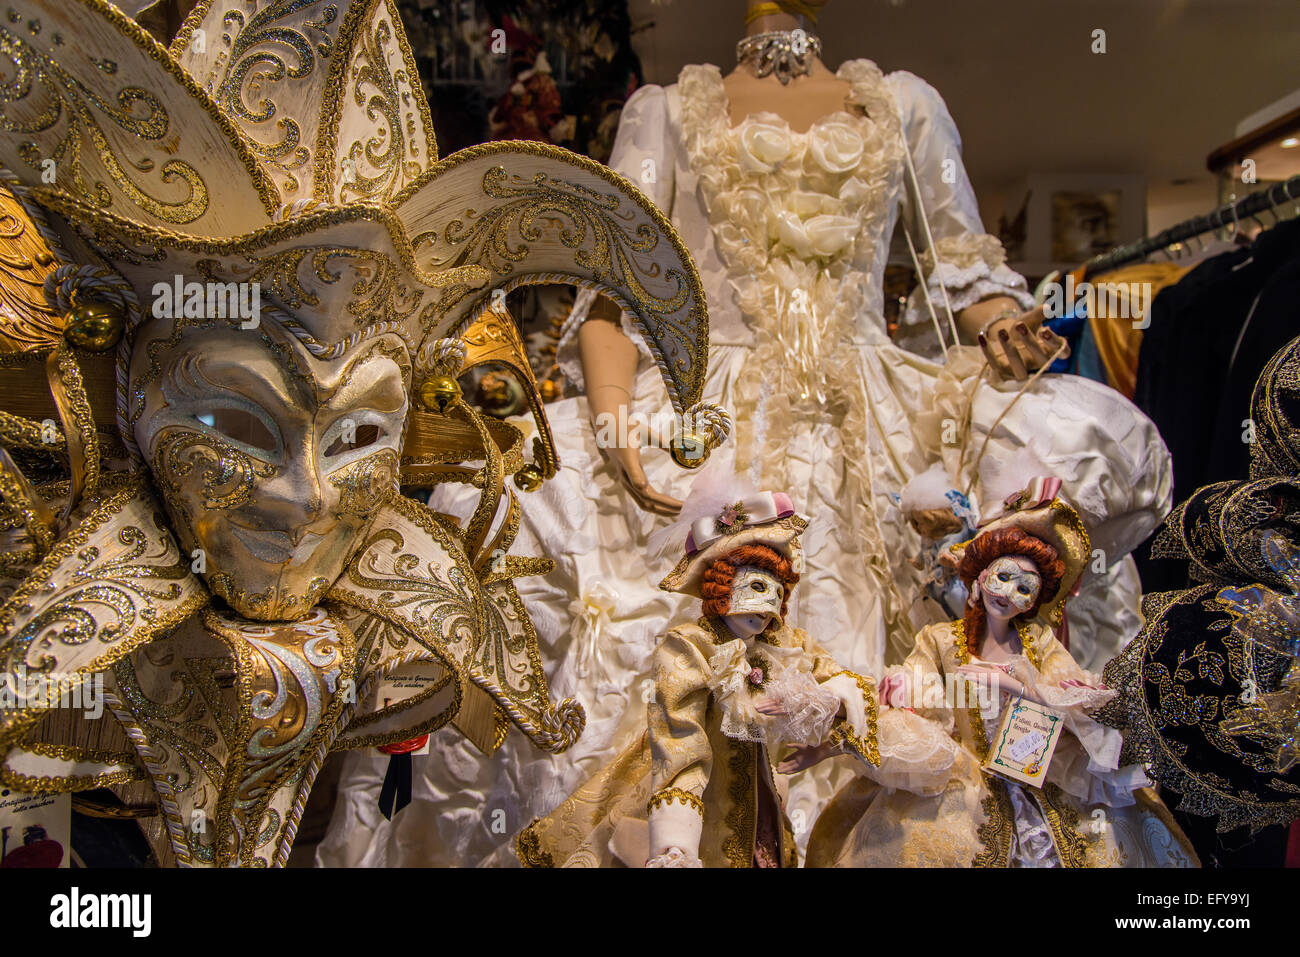 Traditionellen venezianischen Karneval Masken und Kostüme in einem  Schaufenster, Venedig, Veneto, Italien Stockfotografie - Alamy